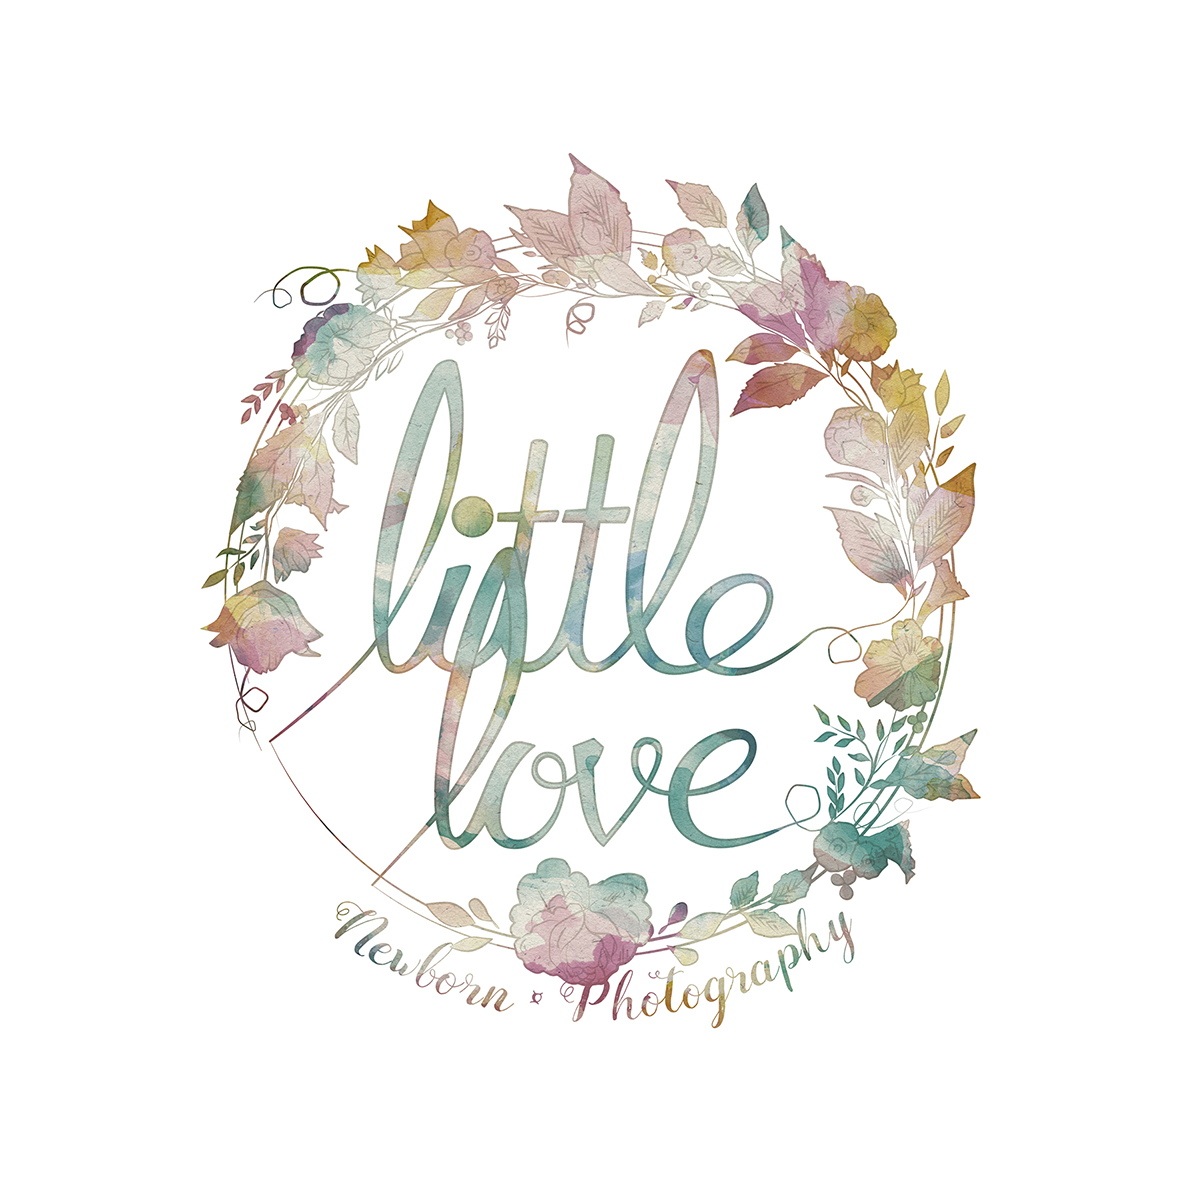 little love